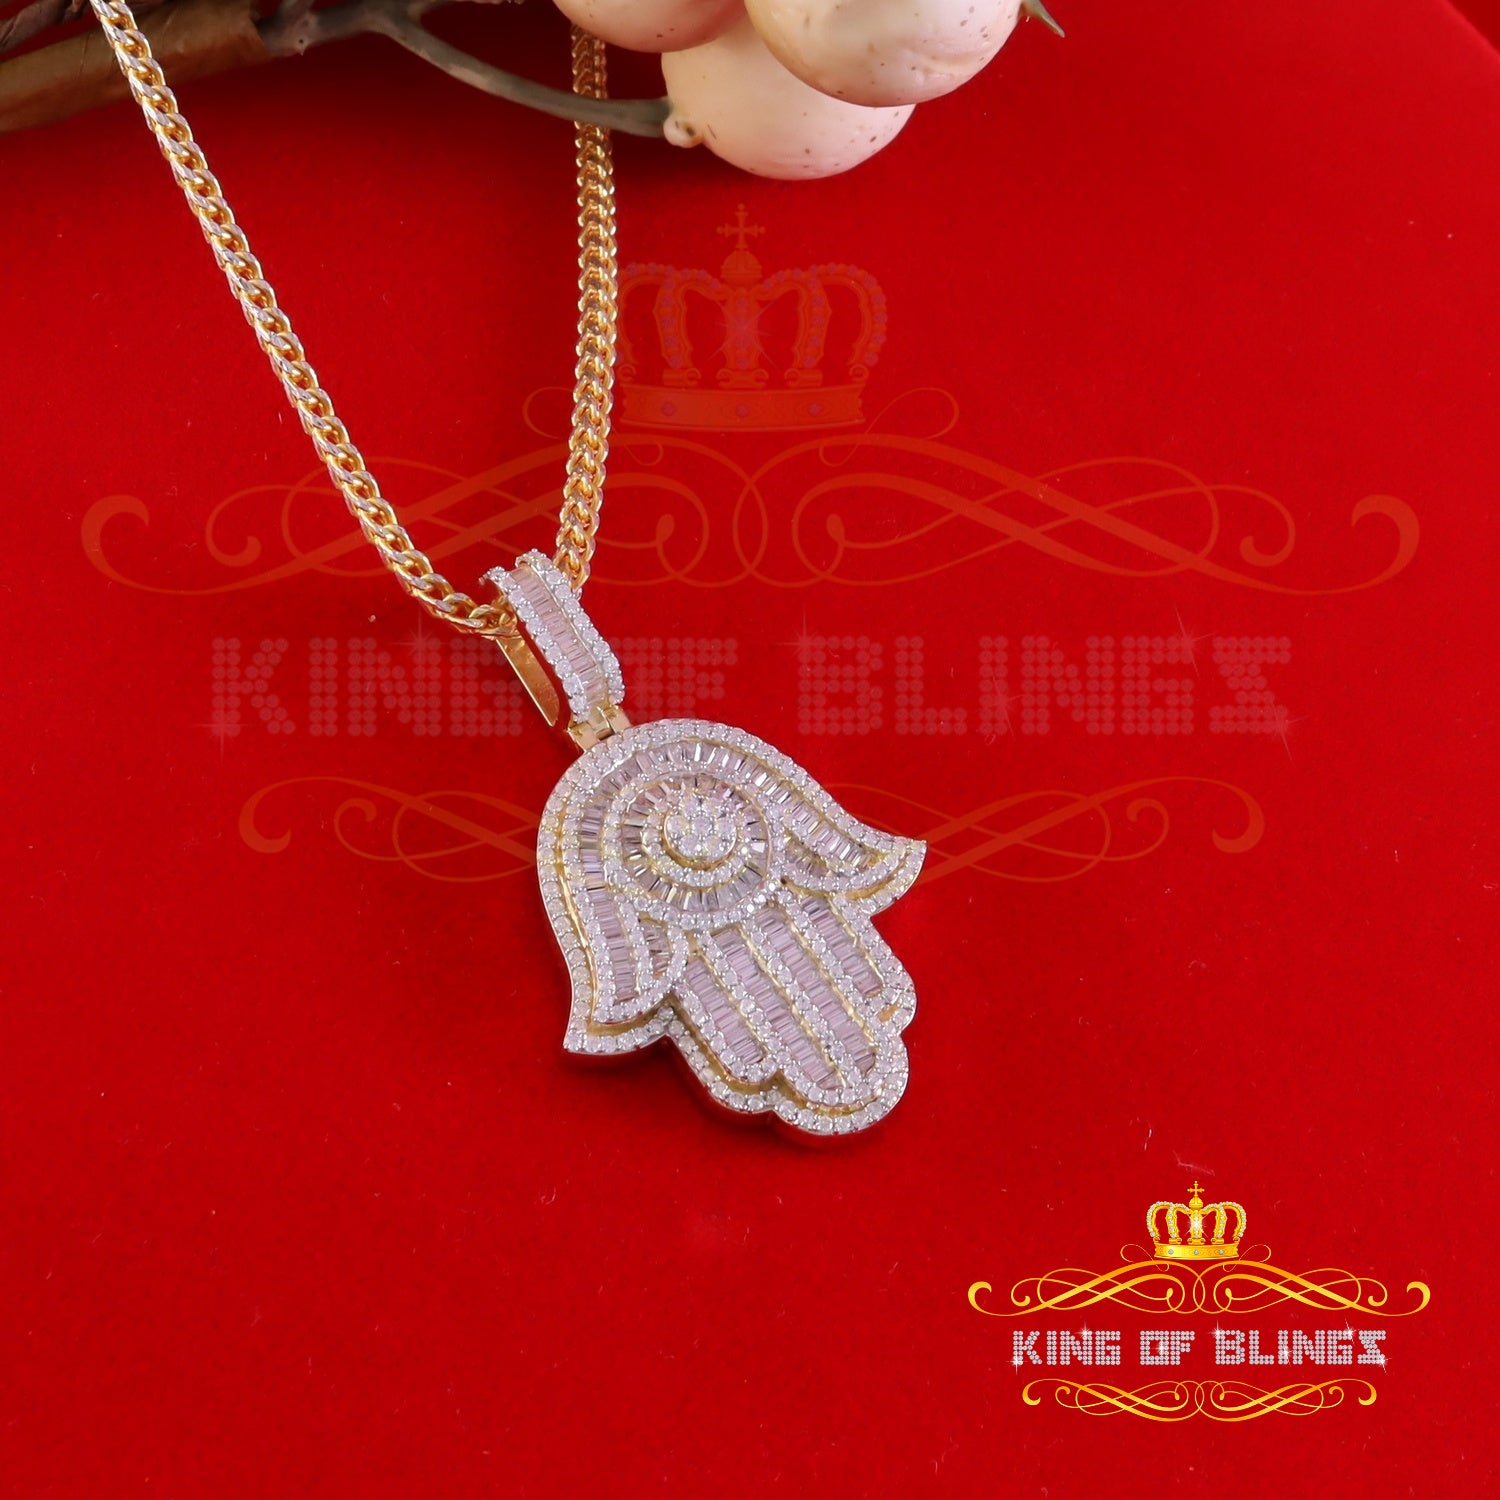 King Of Bling's Men's/Women's New Hamsa Pendant 8.0ct VVS D Moissanite Yellow Sterling Silver KING OF BLINGS